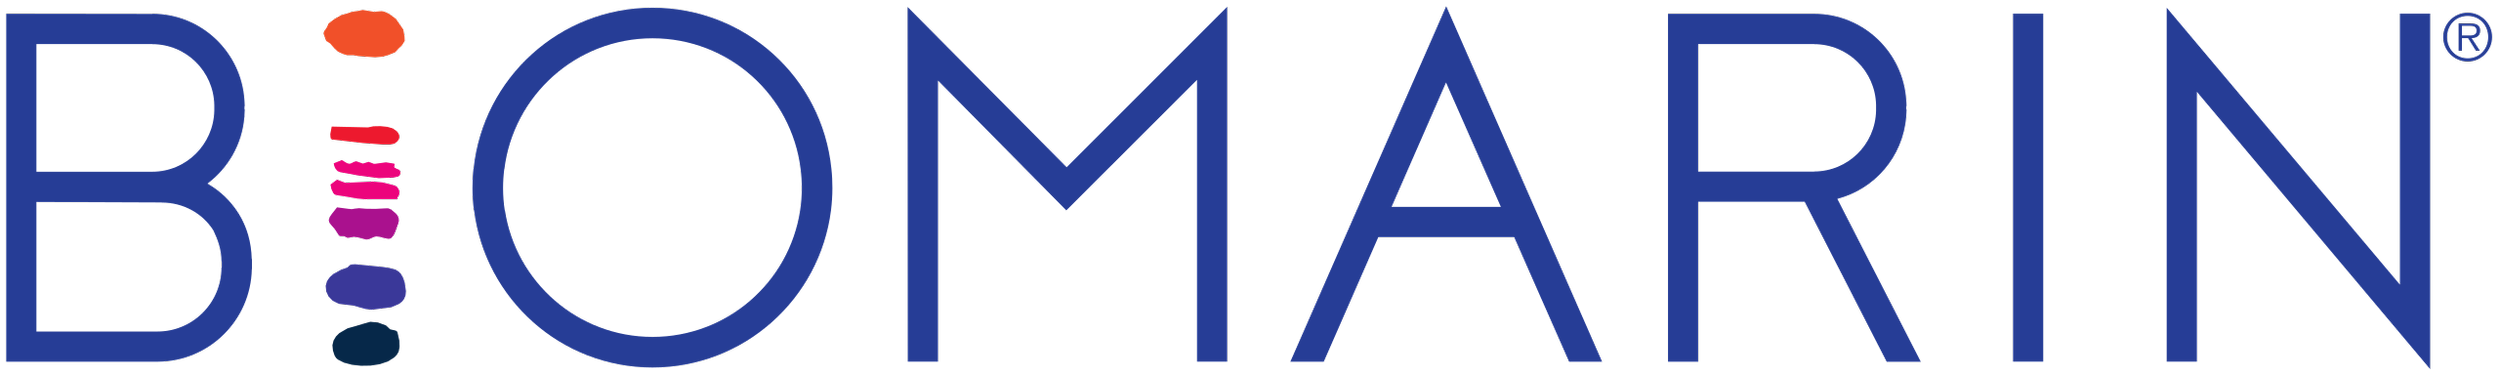 BioMarin_logo.png